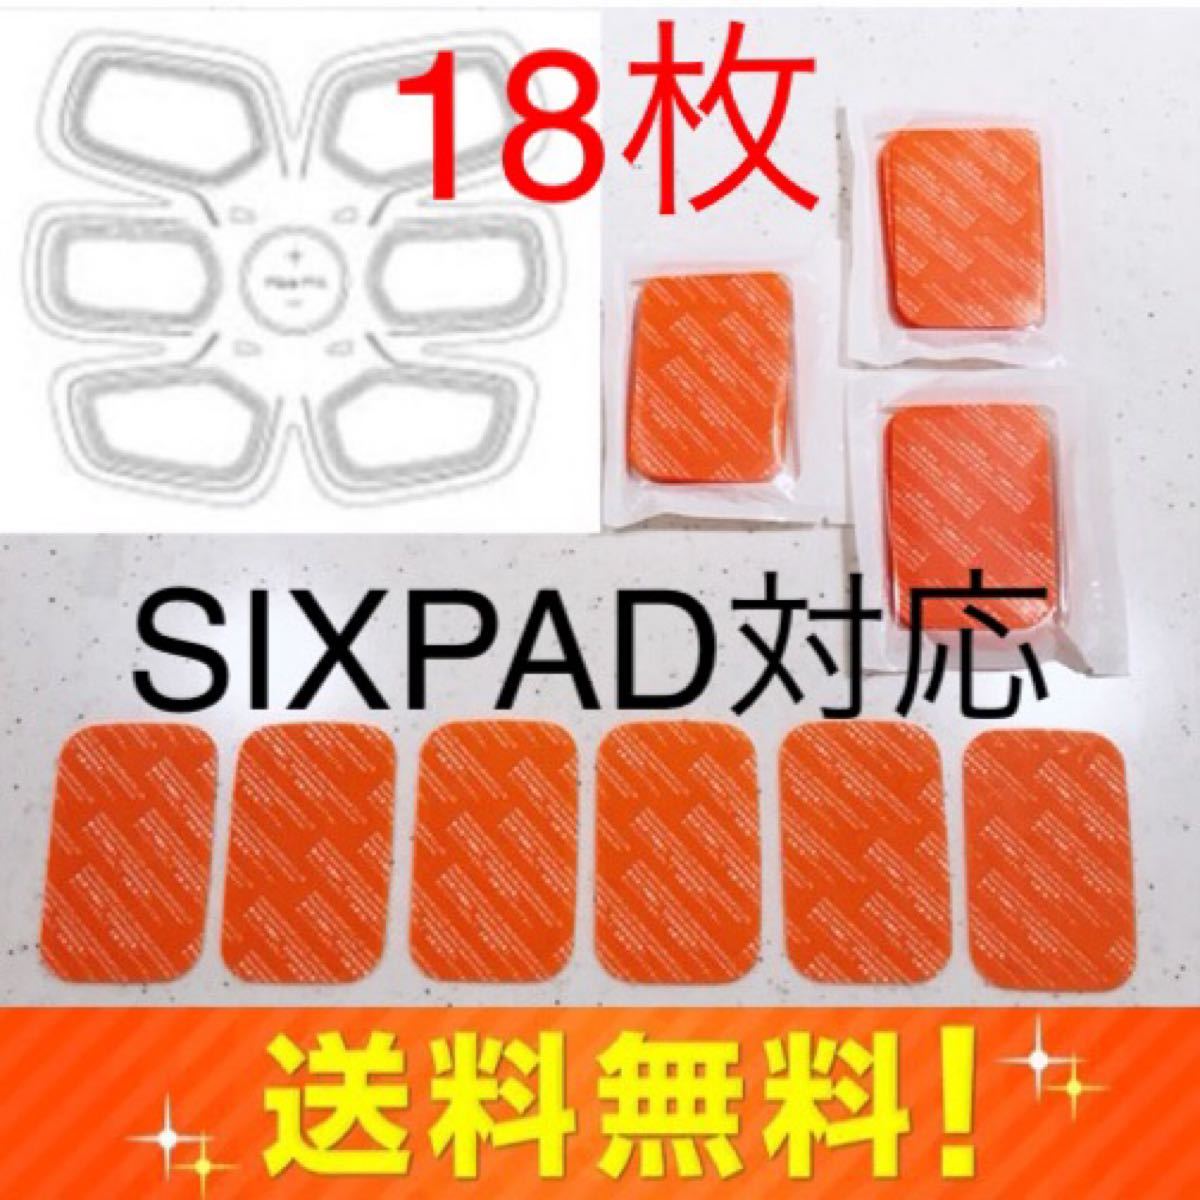 18枚 SIXPAD 互換ジェルシート シックスパッド アブズフィット2 j